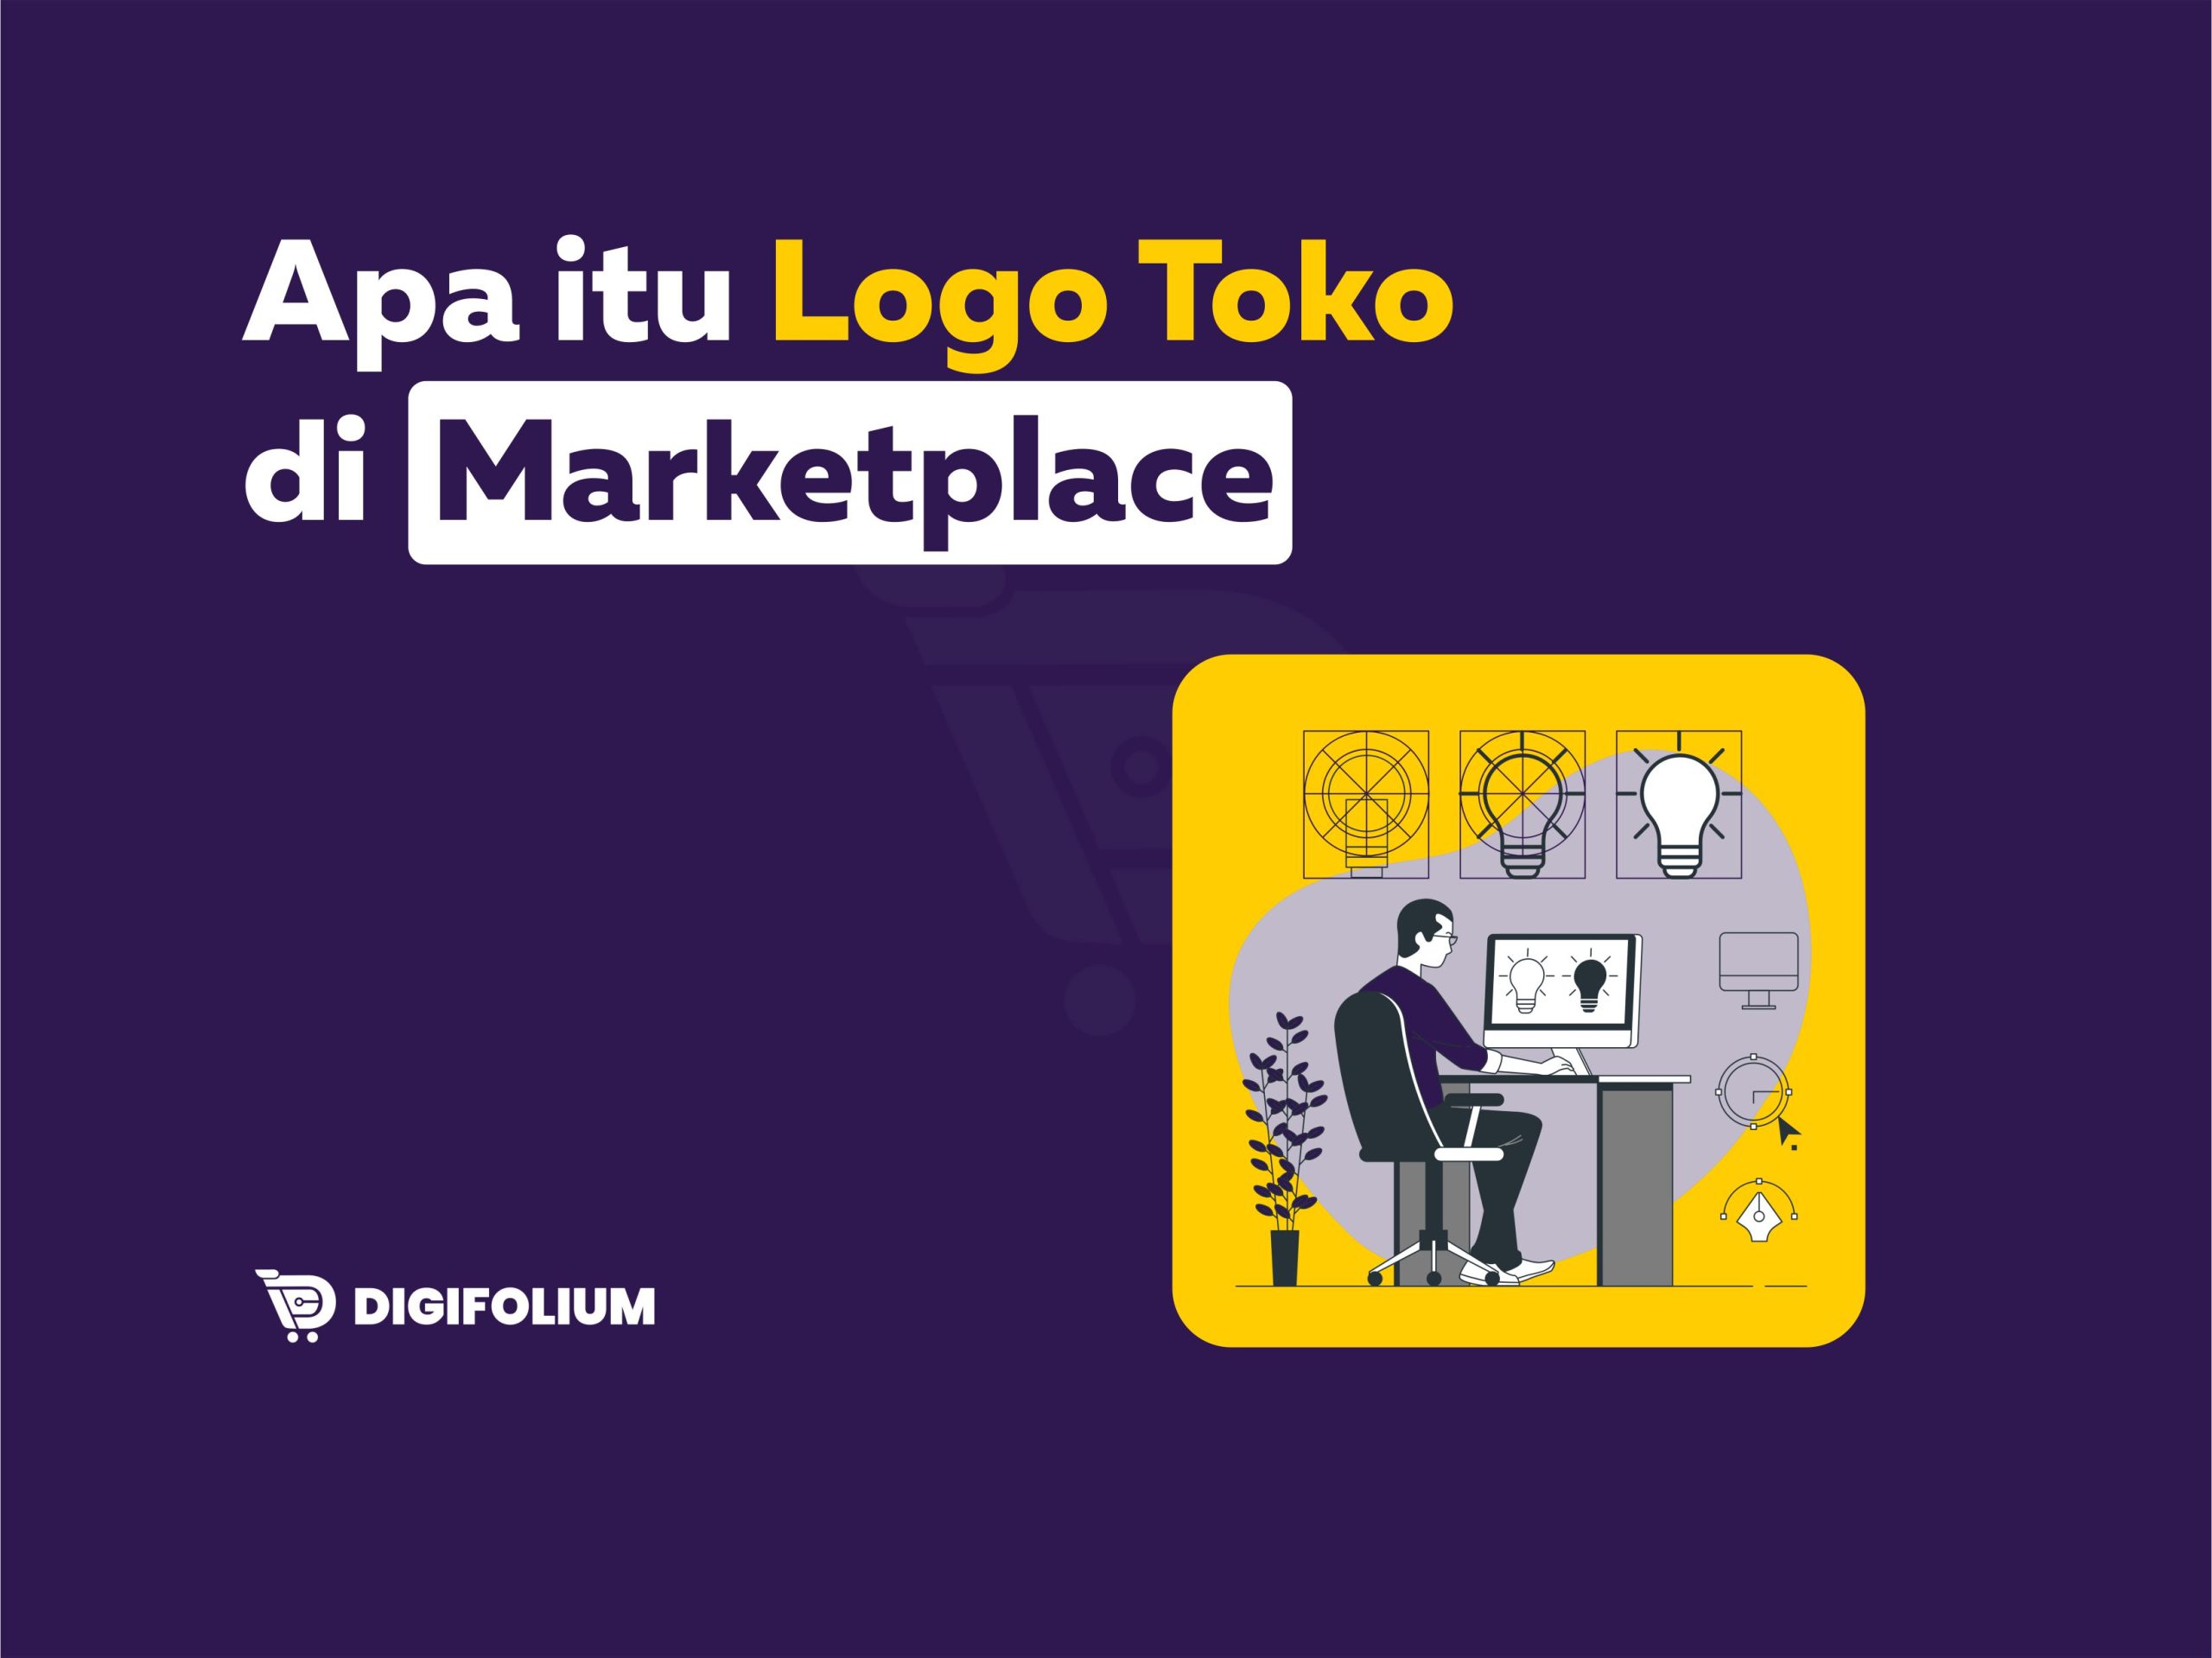 Apa Itu Logo Toko di Marketplace?